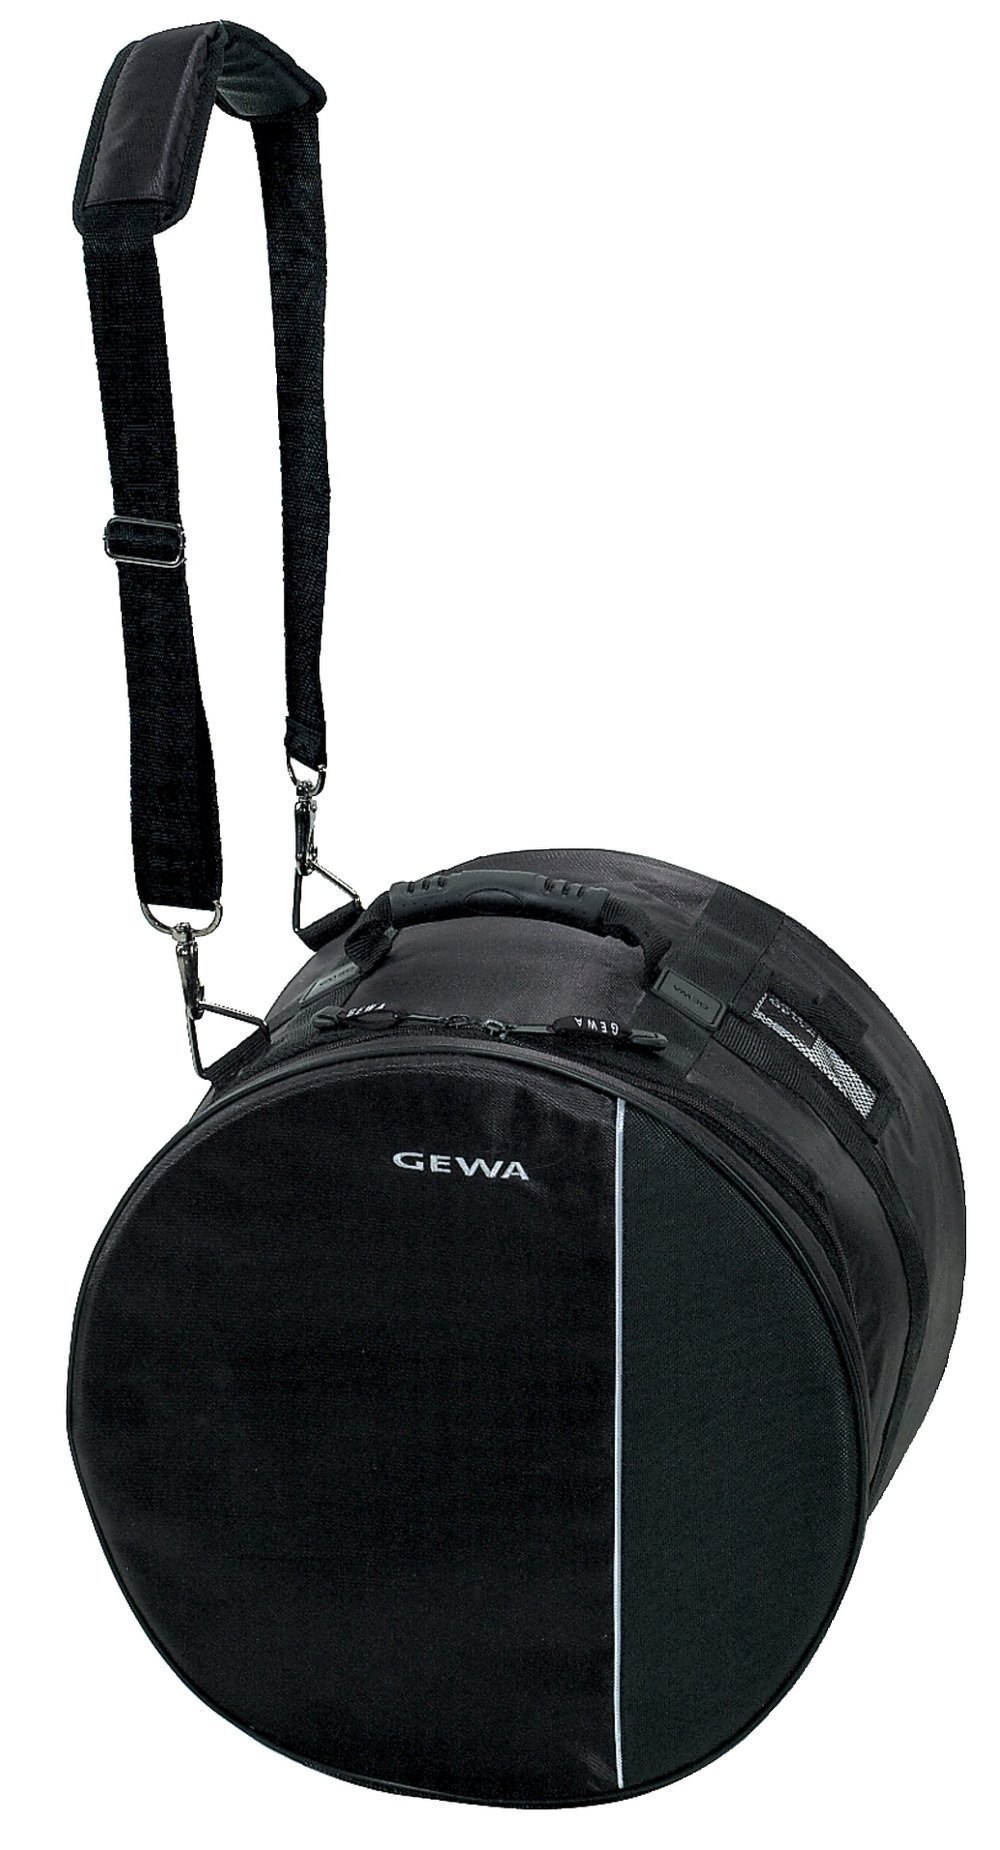 Drum Bag Premium 14"x14"